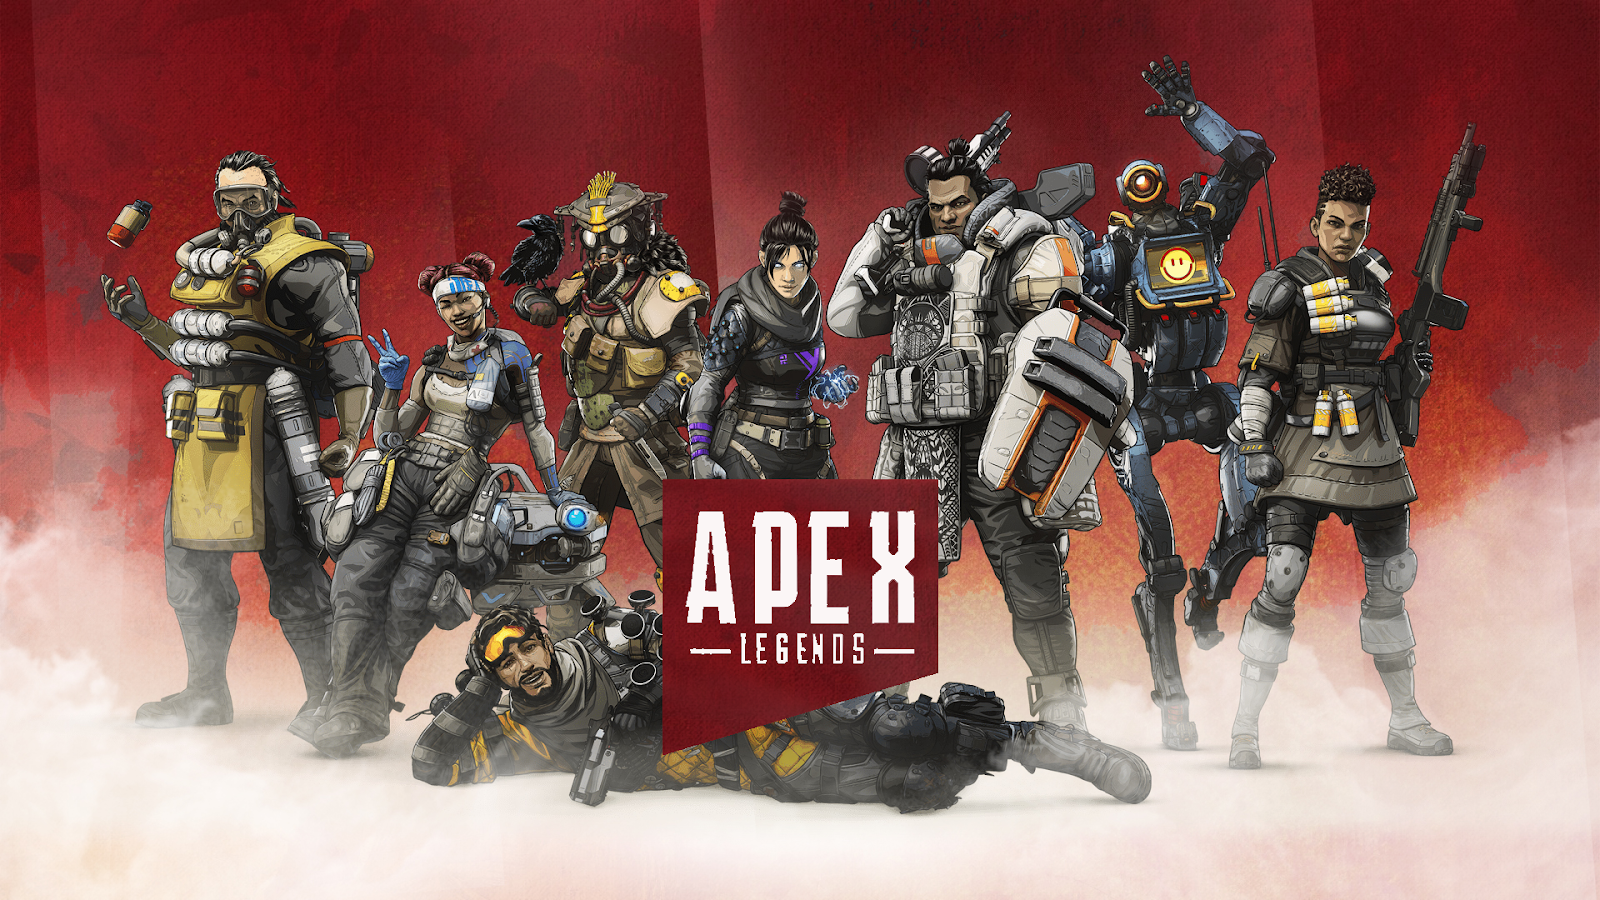 Apex Legends: conheça os personagens e suas habilidades